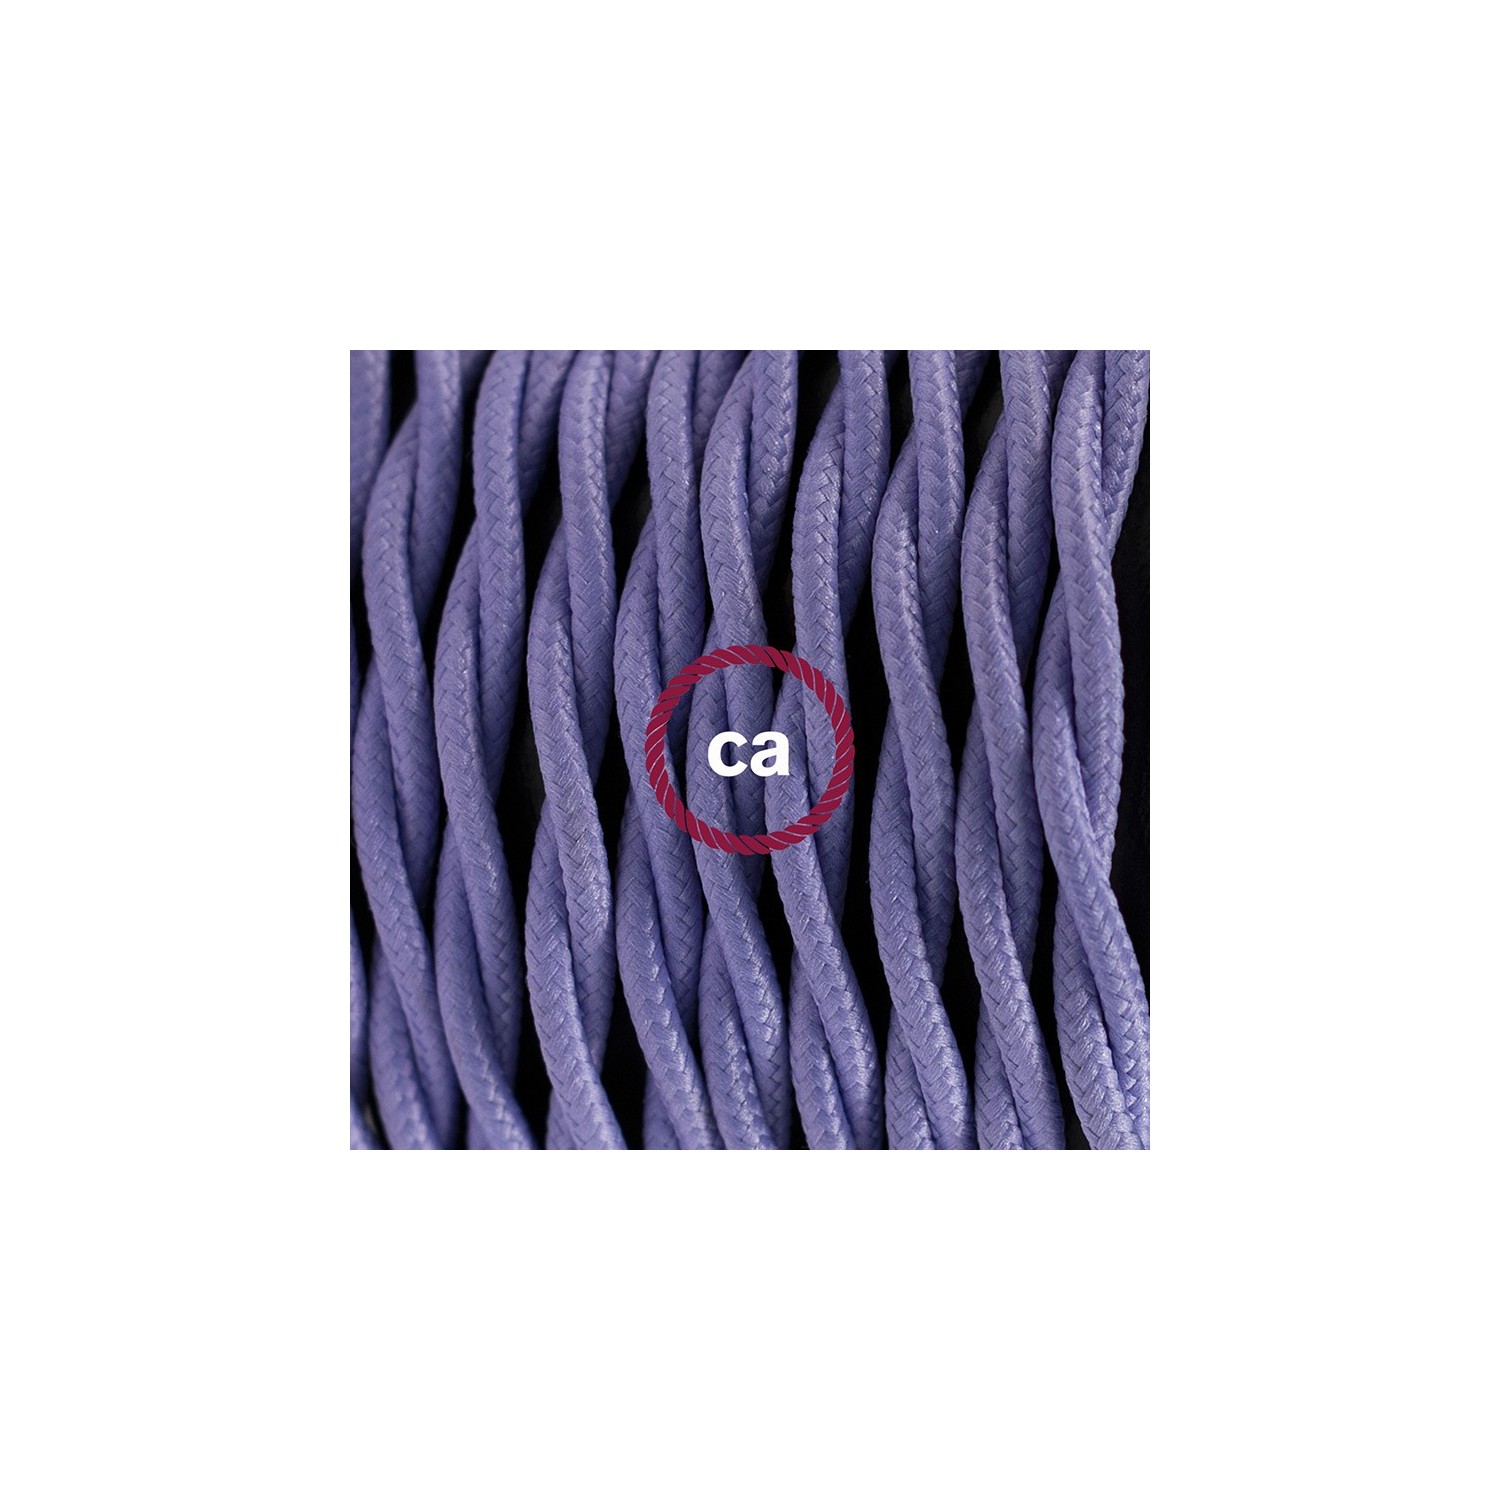 SnakeBis cordon avec douille et câble textile Effet Soie Lilas TM07